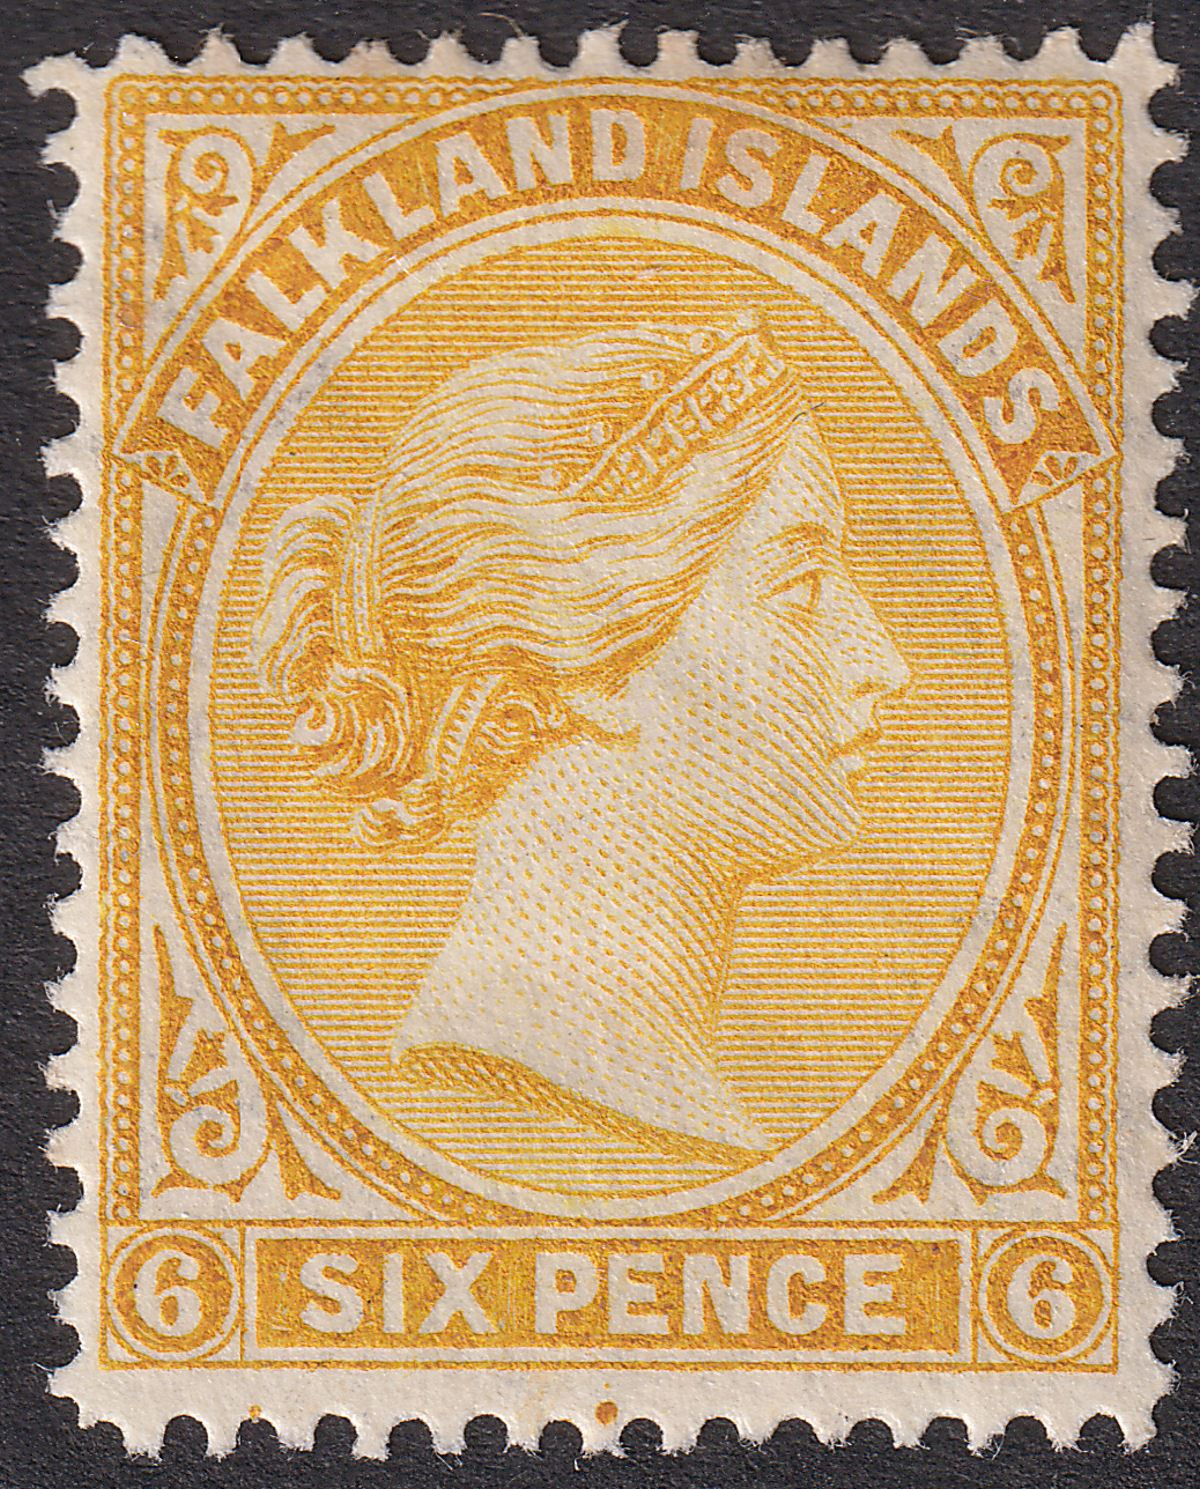 Falkland Islands 1896 QV 6d Yellow Mint SG34 cat £55 tones